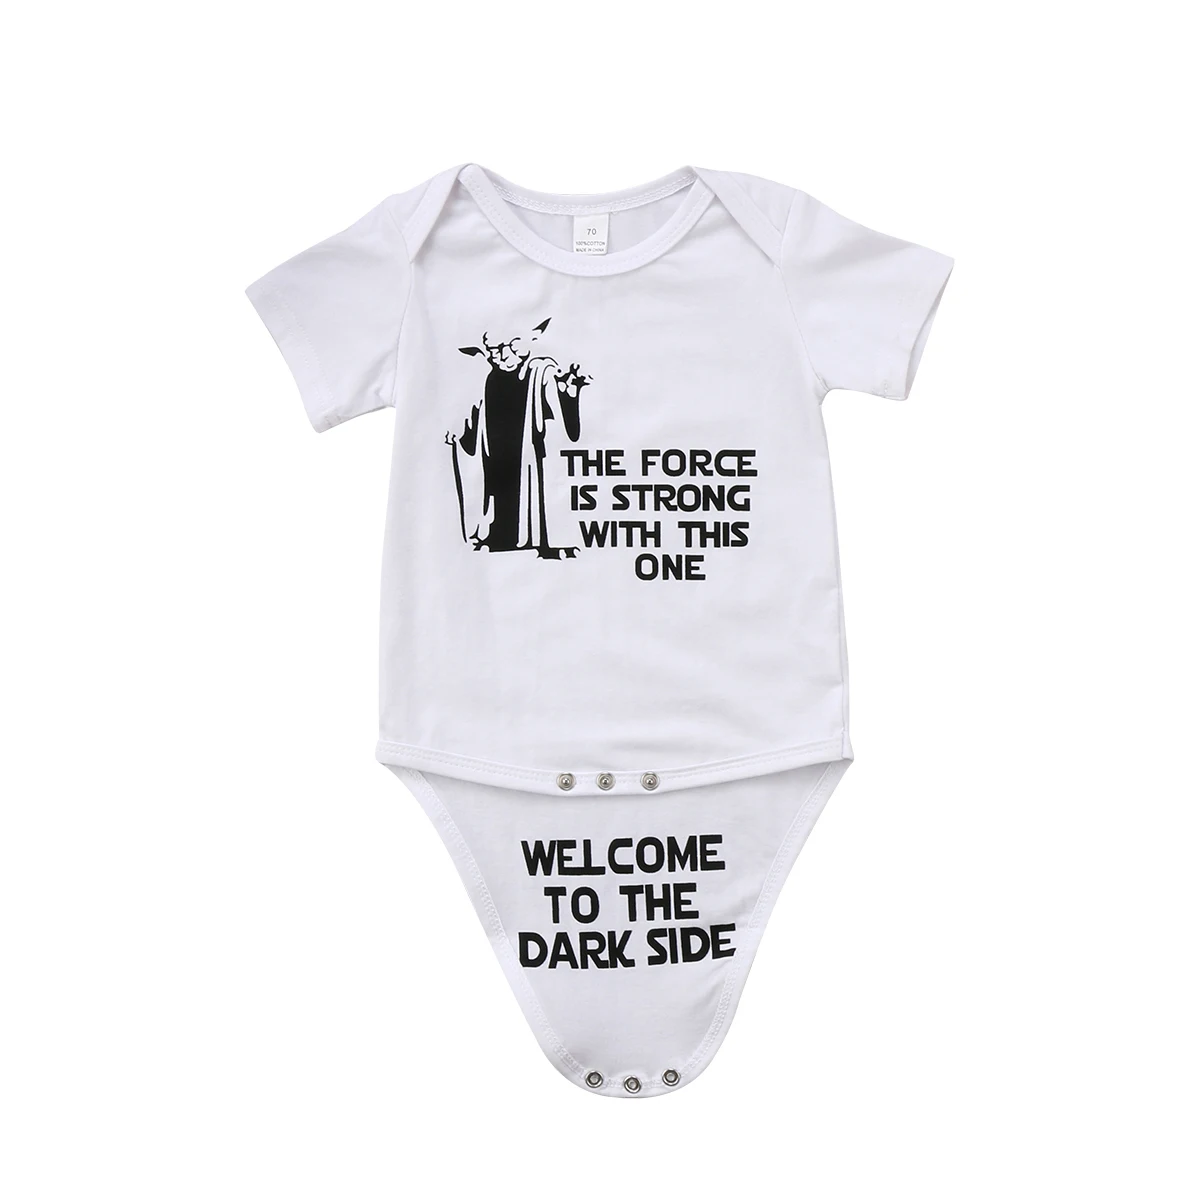 Г. Боди с короткими рукавами для новорожденных мальчиков с изображением Звездных войн, белый Повседневный Комбинезон Летняя одежда от 0 до 18 месяцев